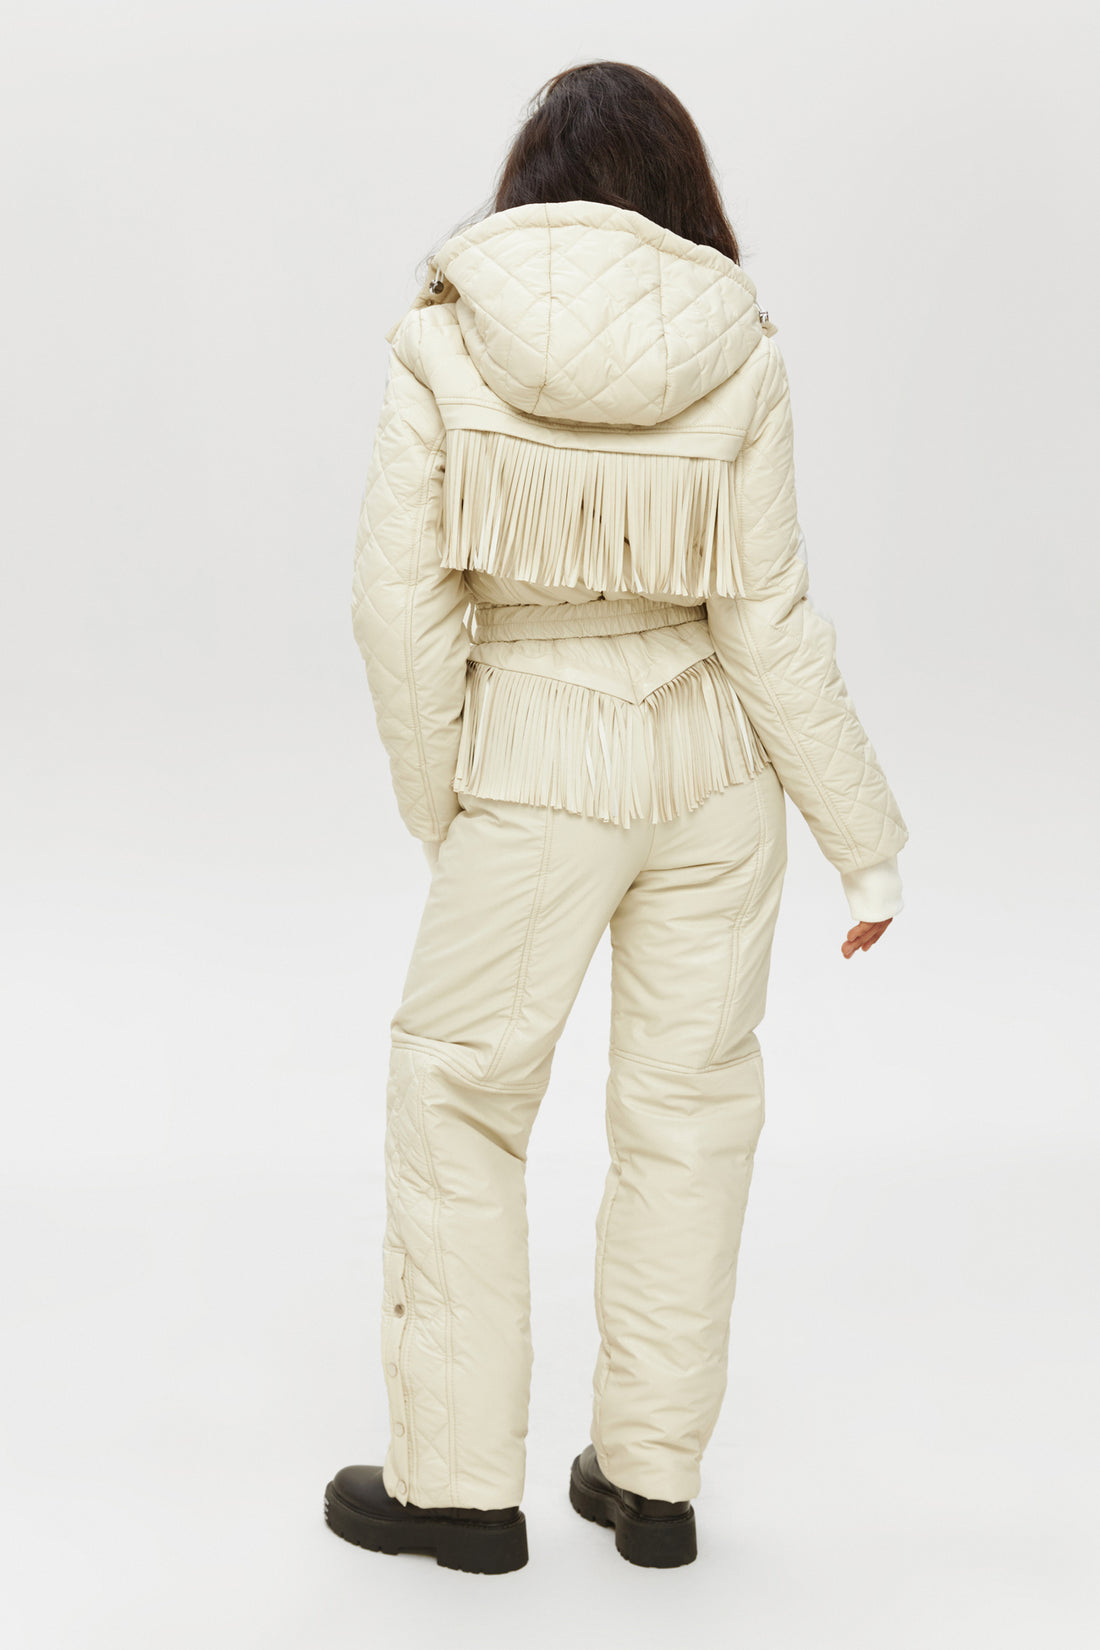 Ivory skisuit LOGAN - Ivory fringe - Stylish ski clothing women's for ski vacation outfits